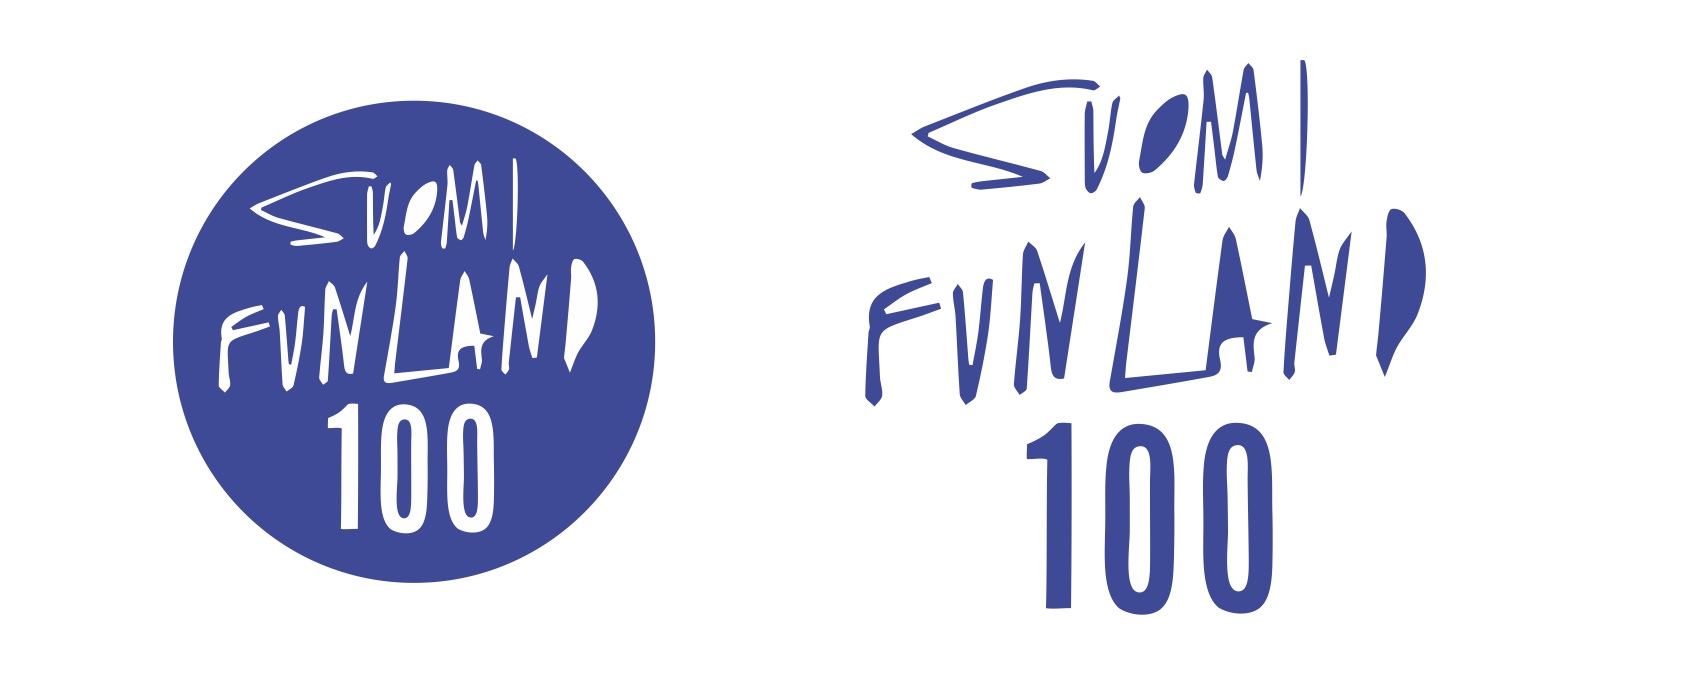 Tulevan vuoden aikana tulemme käsittelemään Suomi Funland -logon alla satavuotiaaseen Suomeen liittyviä kysymyksiä ja ongelmia. Ja sitä sarkaa riittää kynnettäväksi. 